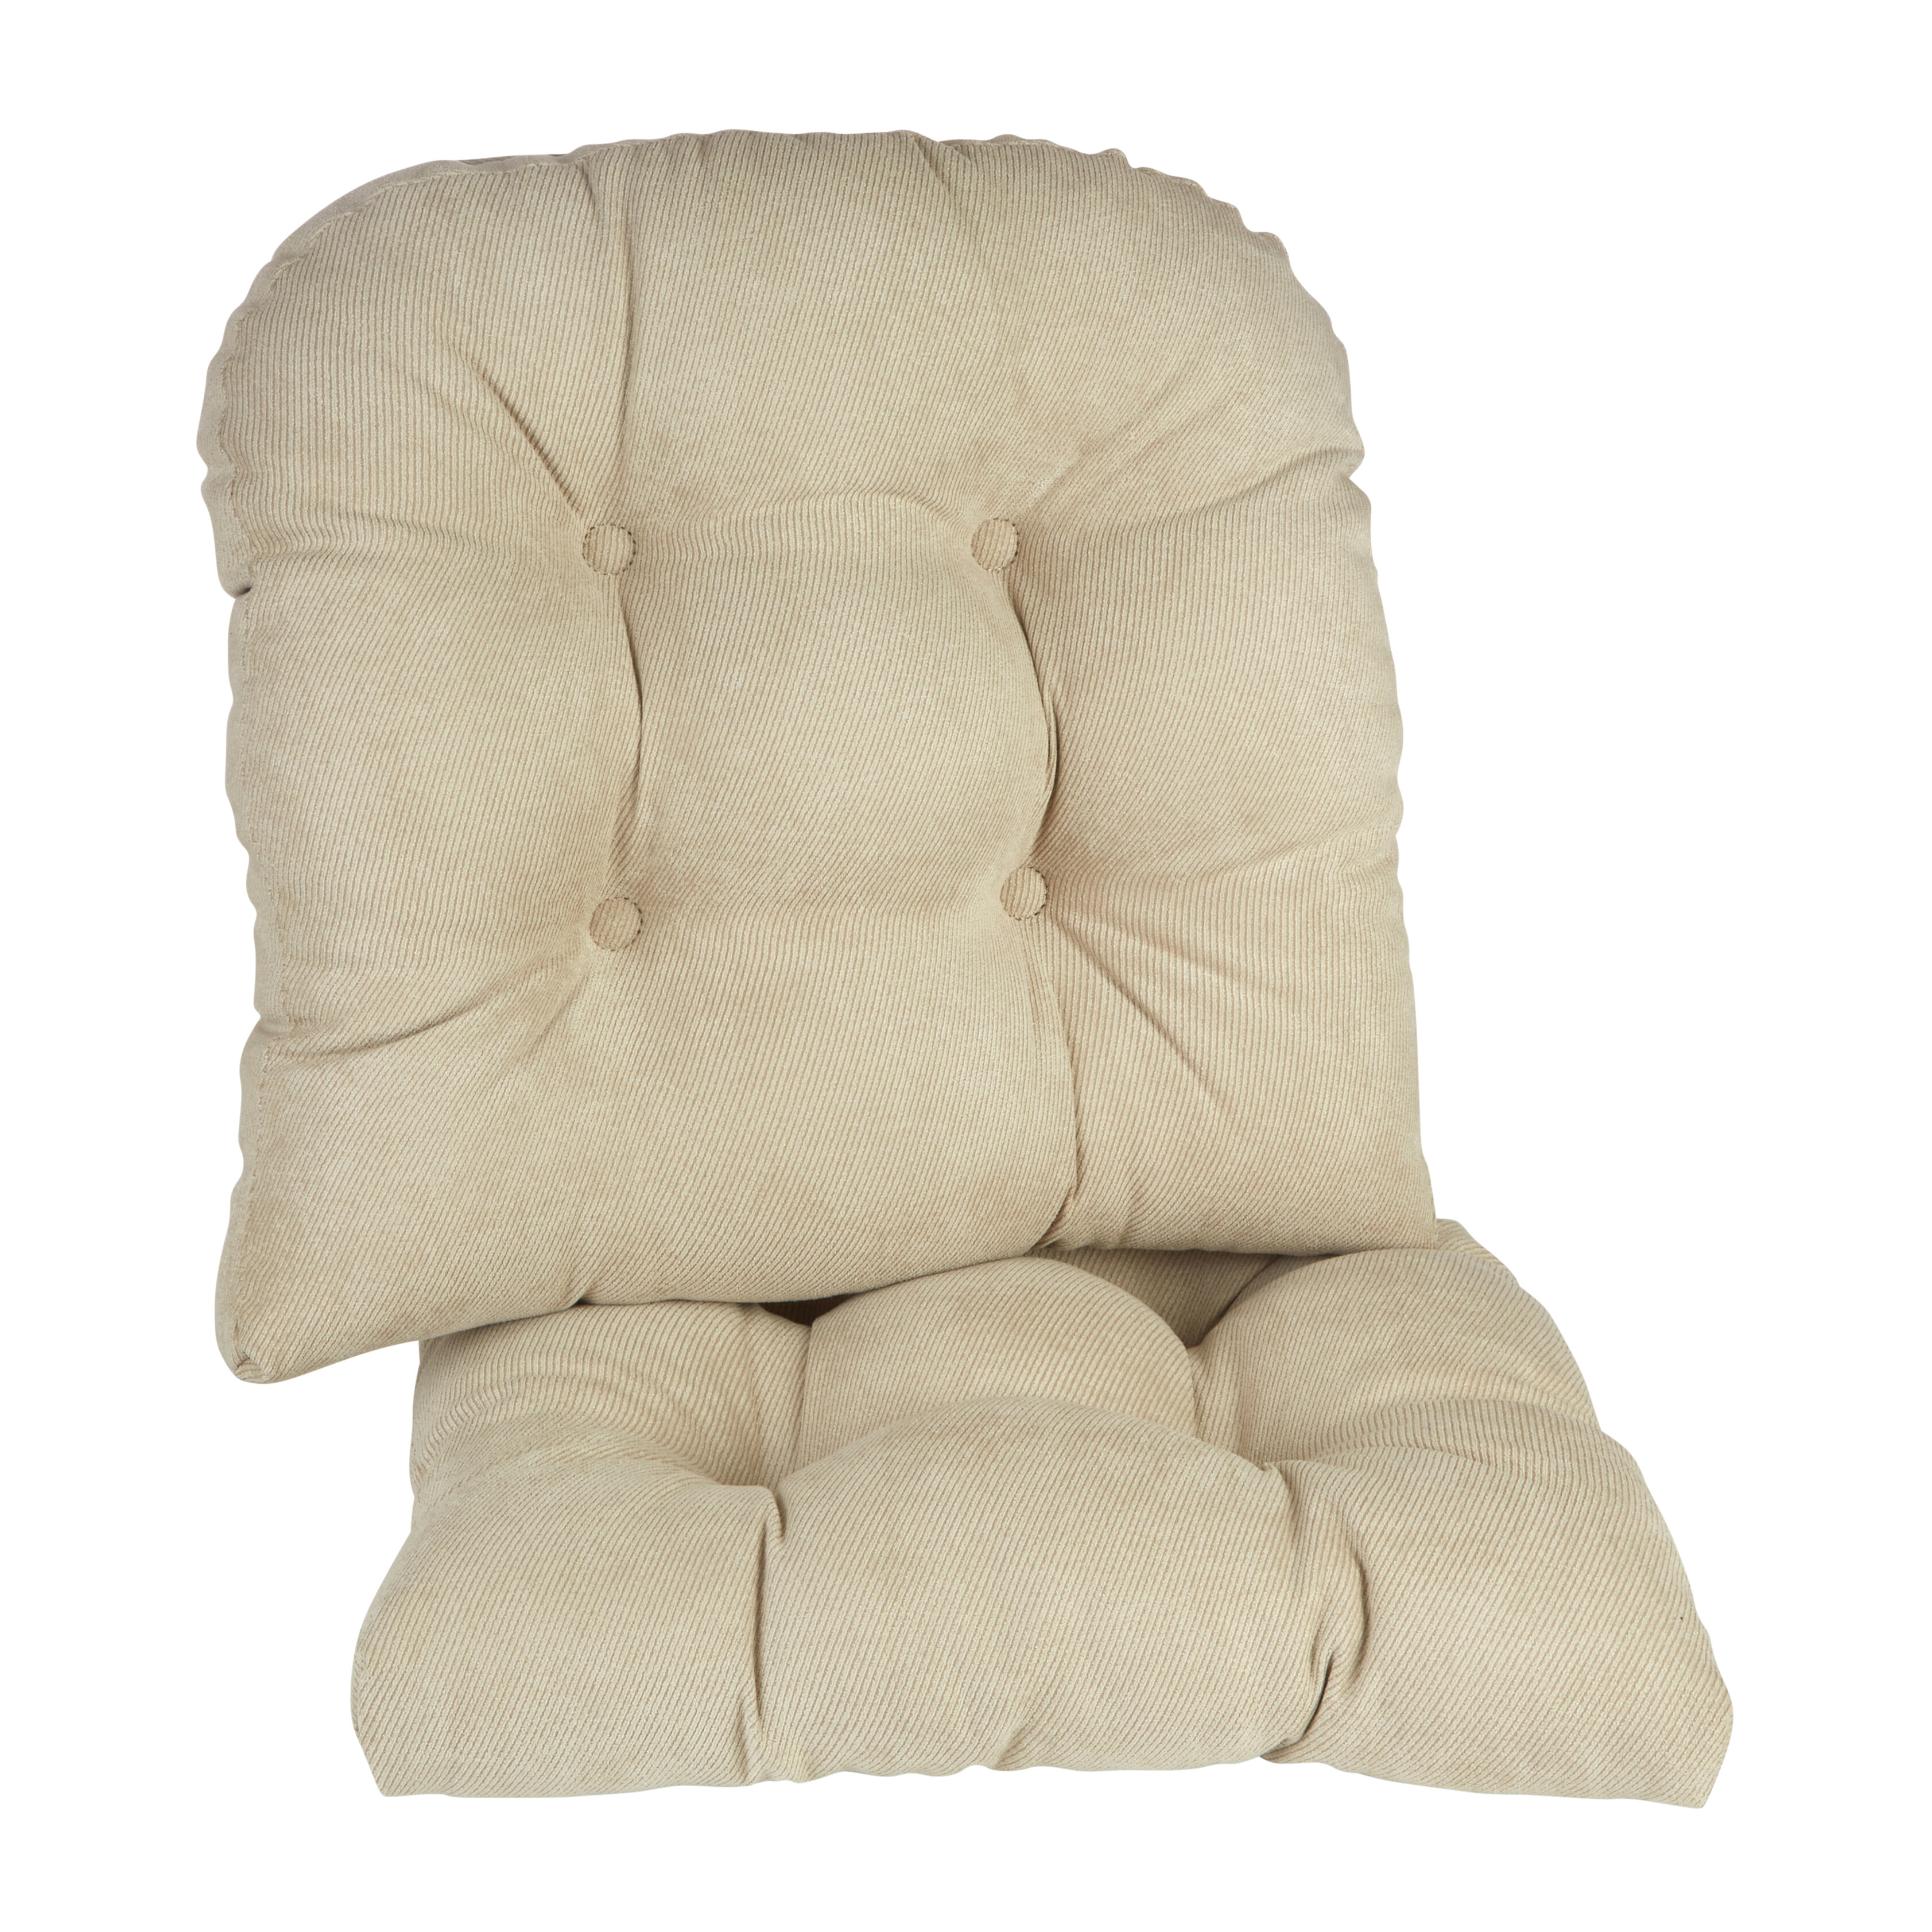 Beige Chair & Seat Cushions You'll Love